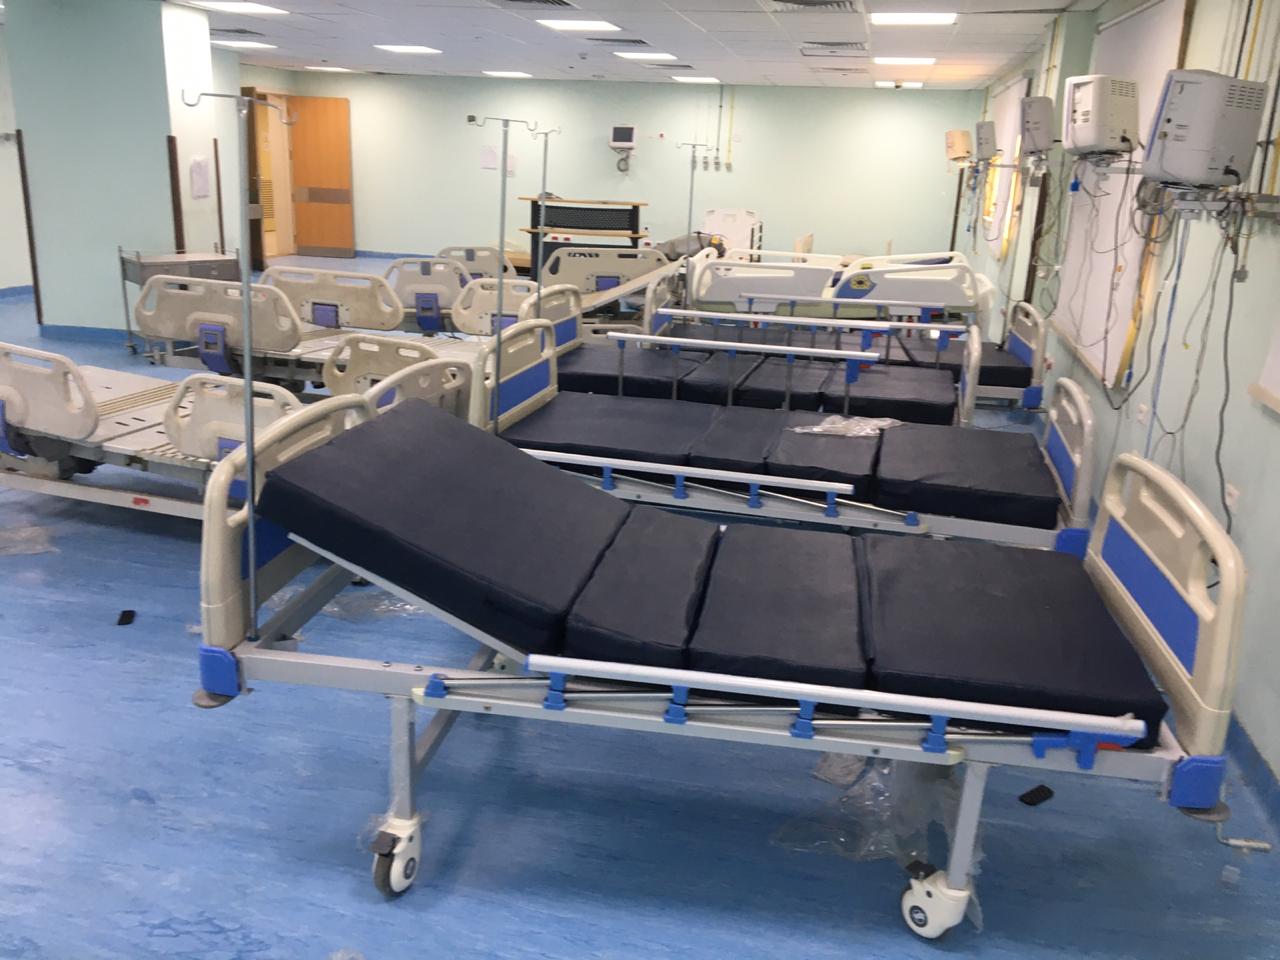 مدير مستشفى الأقصر العام تزويد المستشفى بـ18 سرير عناية مركزة  (2)